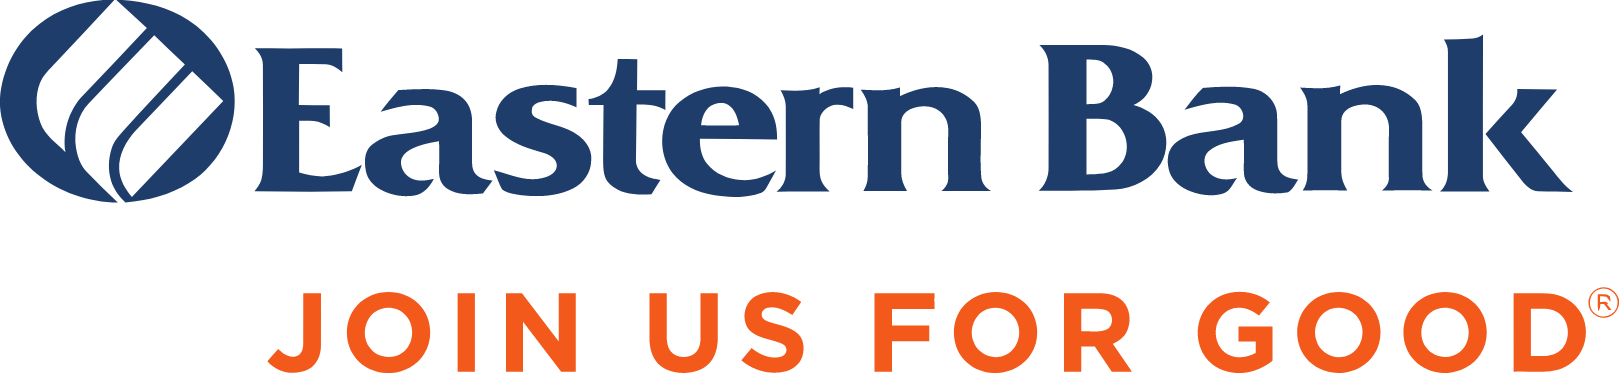 Eastern Bankshares logo large (transparent PNG)